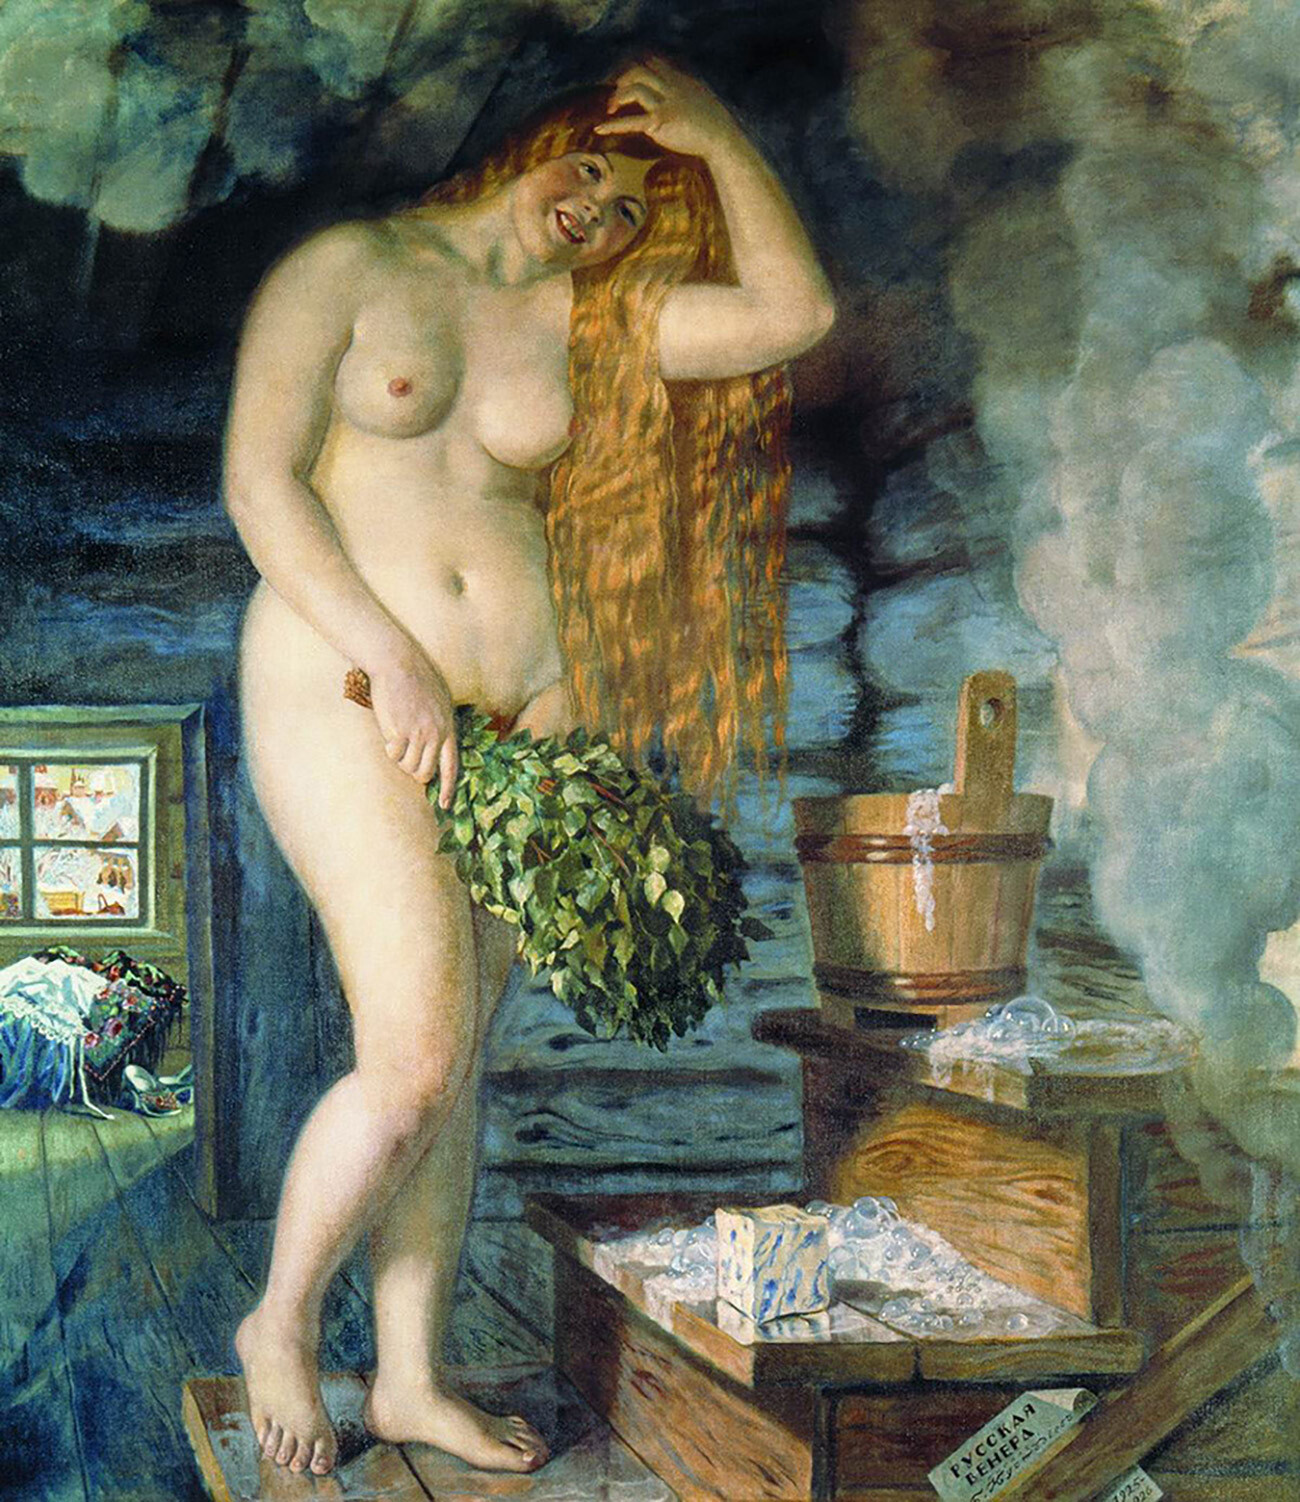 “Venere russa” (in russo: “Russkaja Venera”) è un celebre dipinto a olio su tela realizzato dall’artista Boris Kustodiev nel 1925-1926